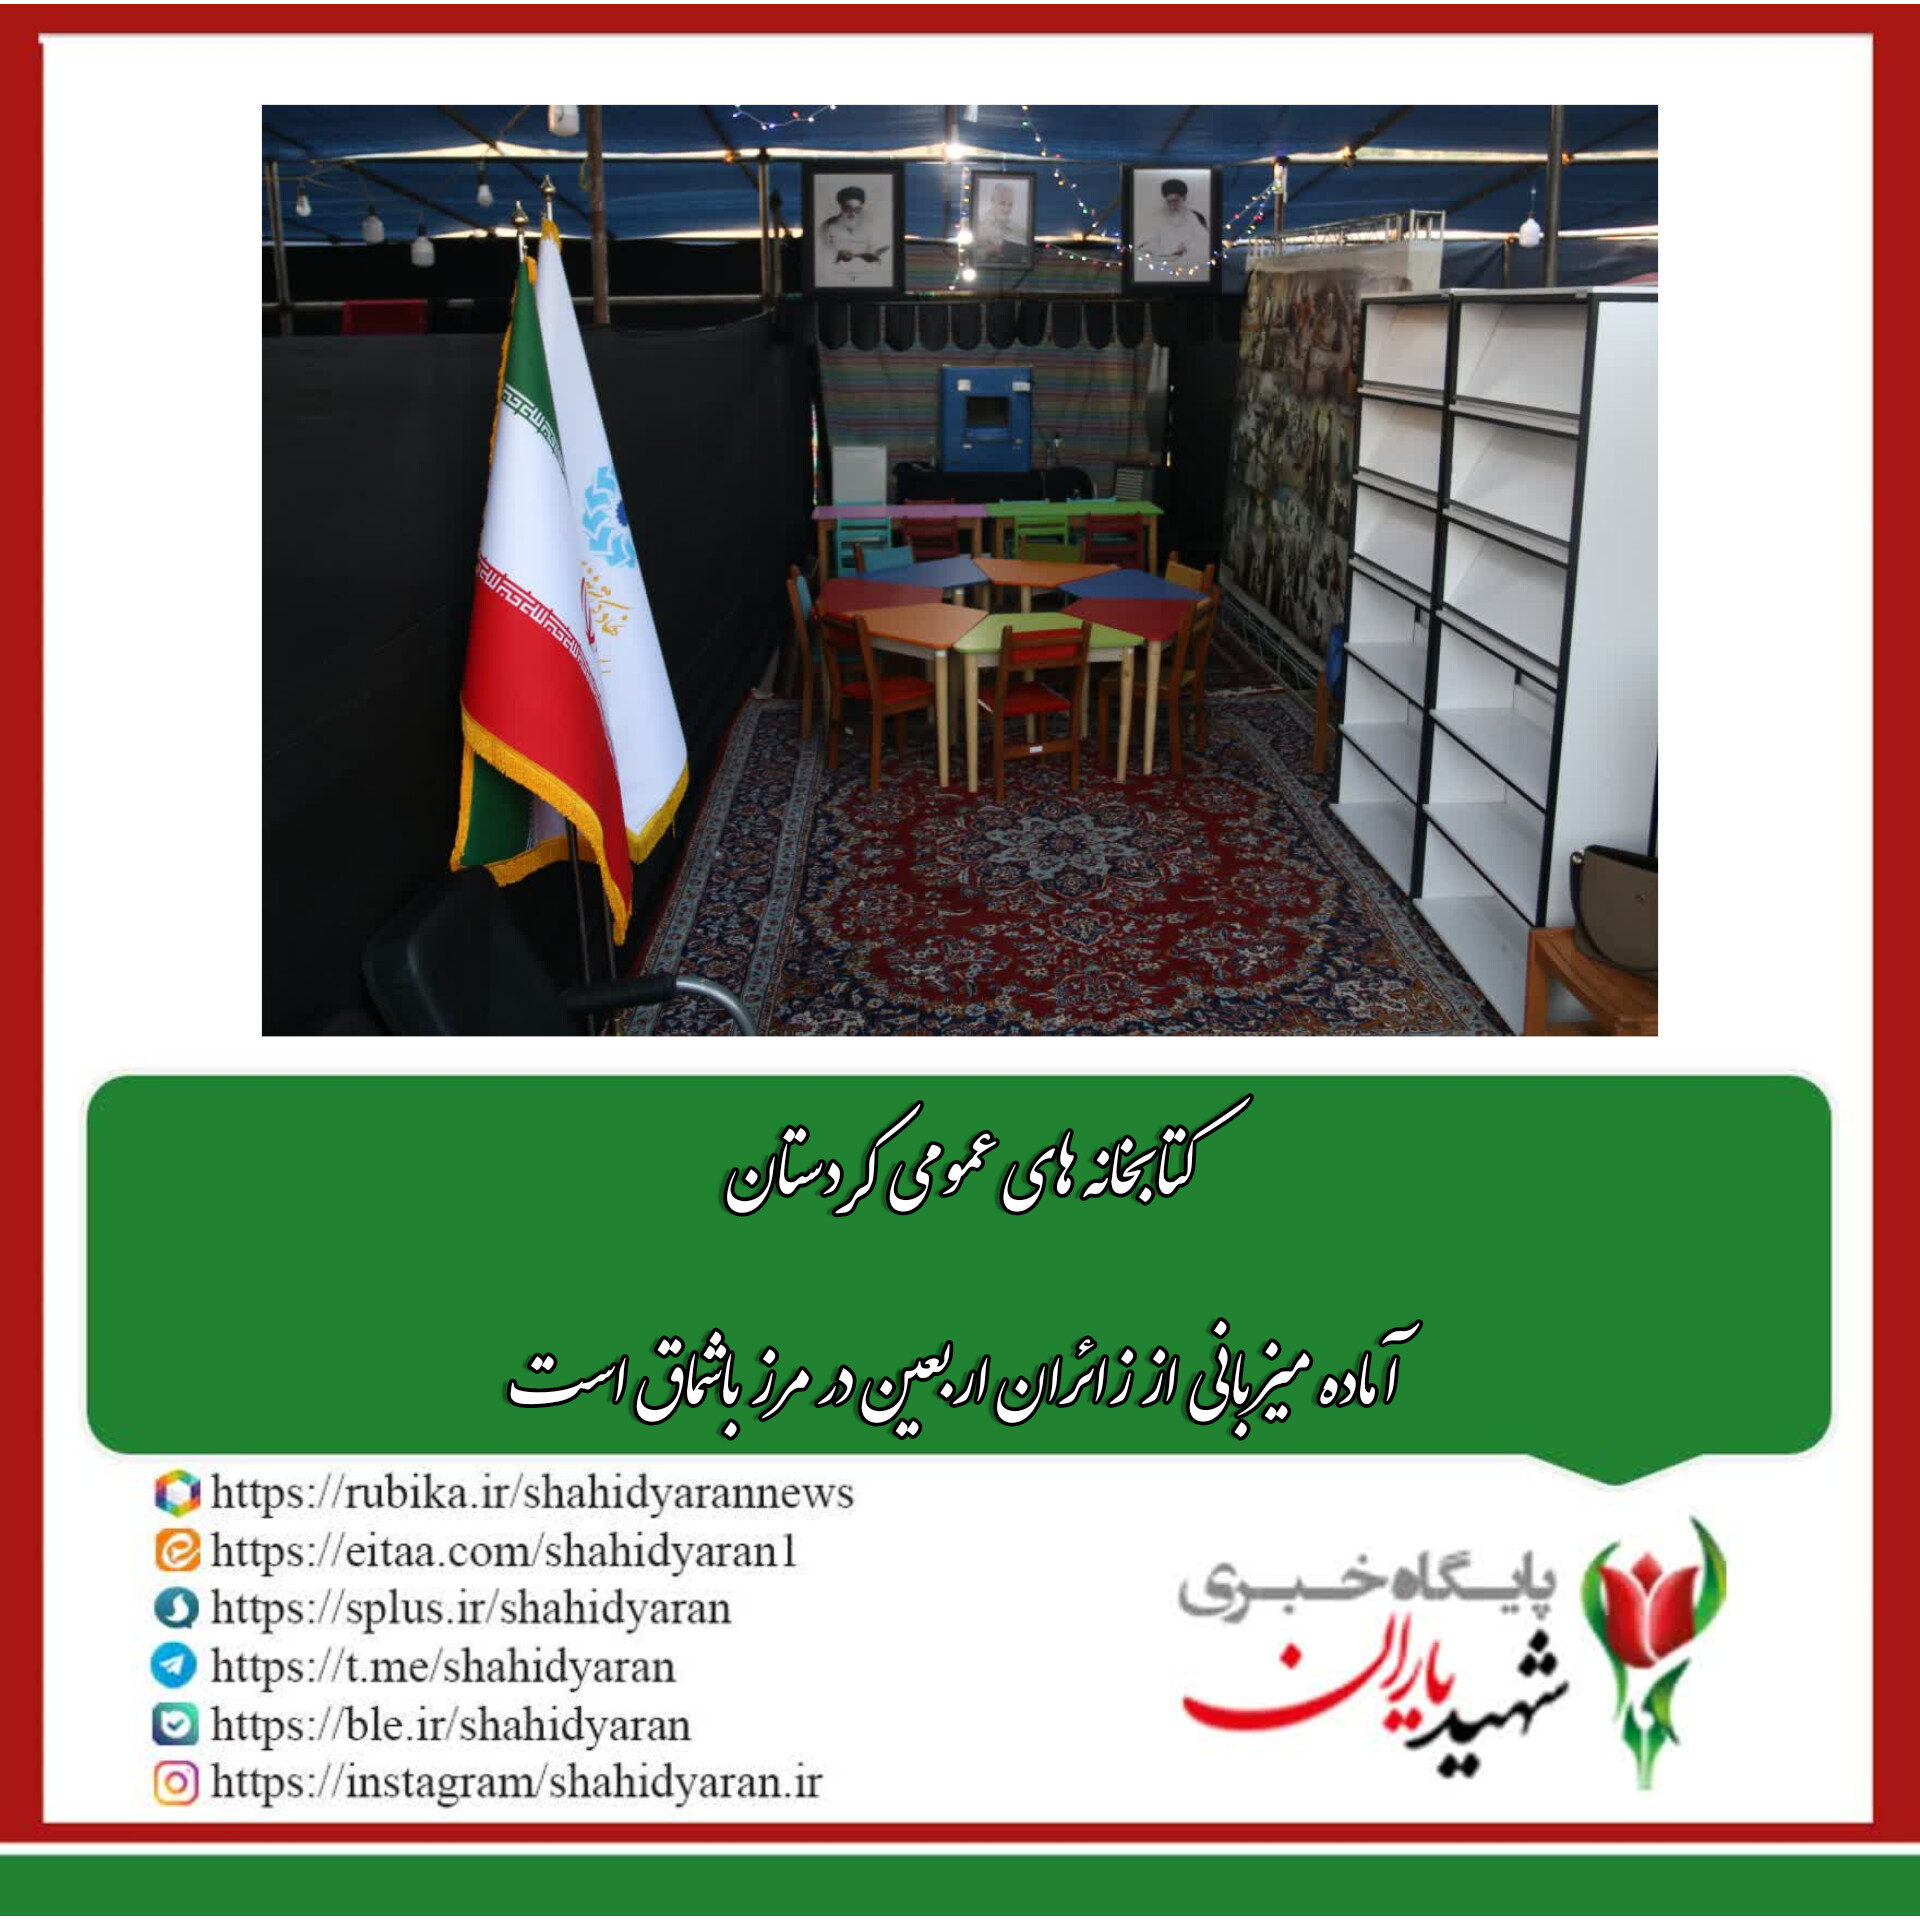 سرپرست اداره کل کتابخانه های عمومی استان کردستان: